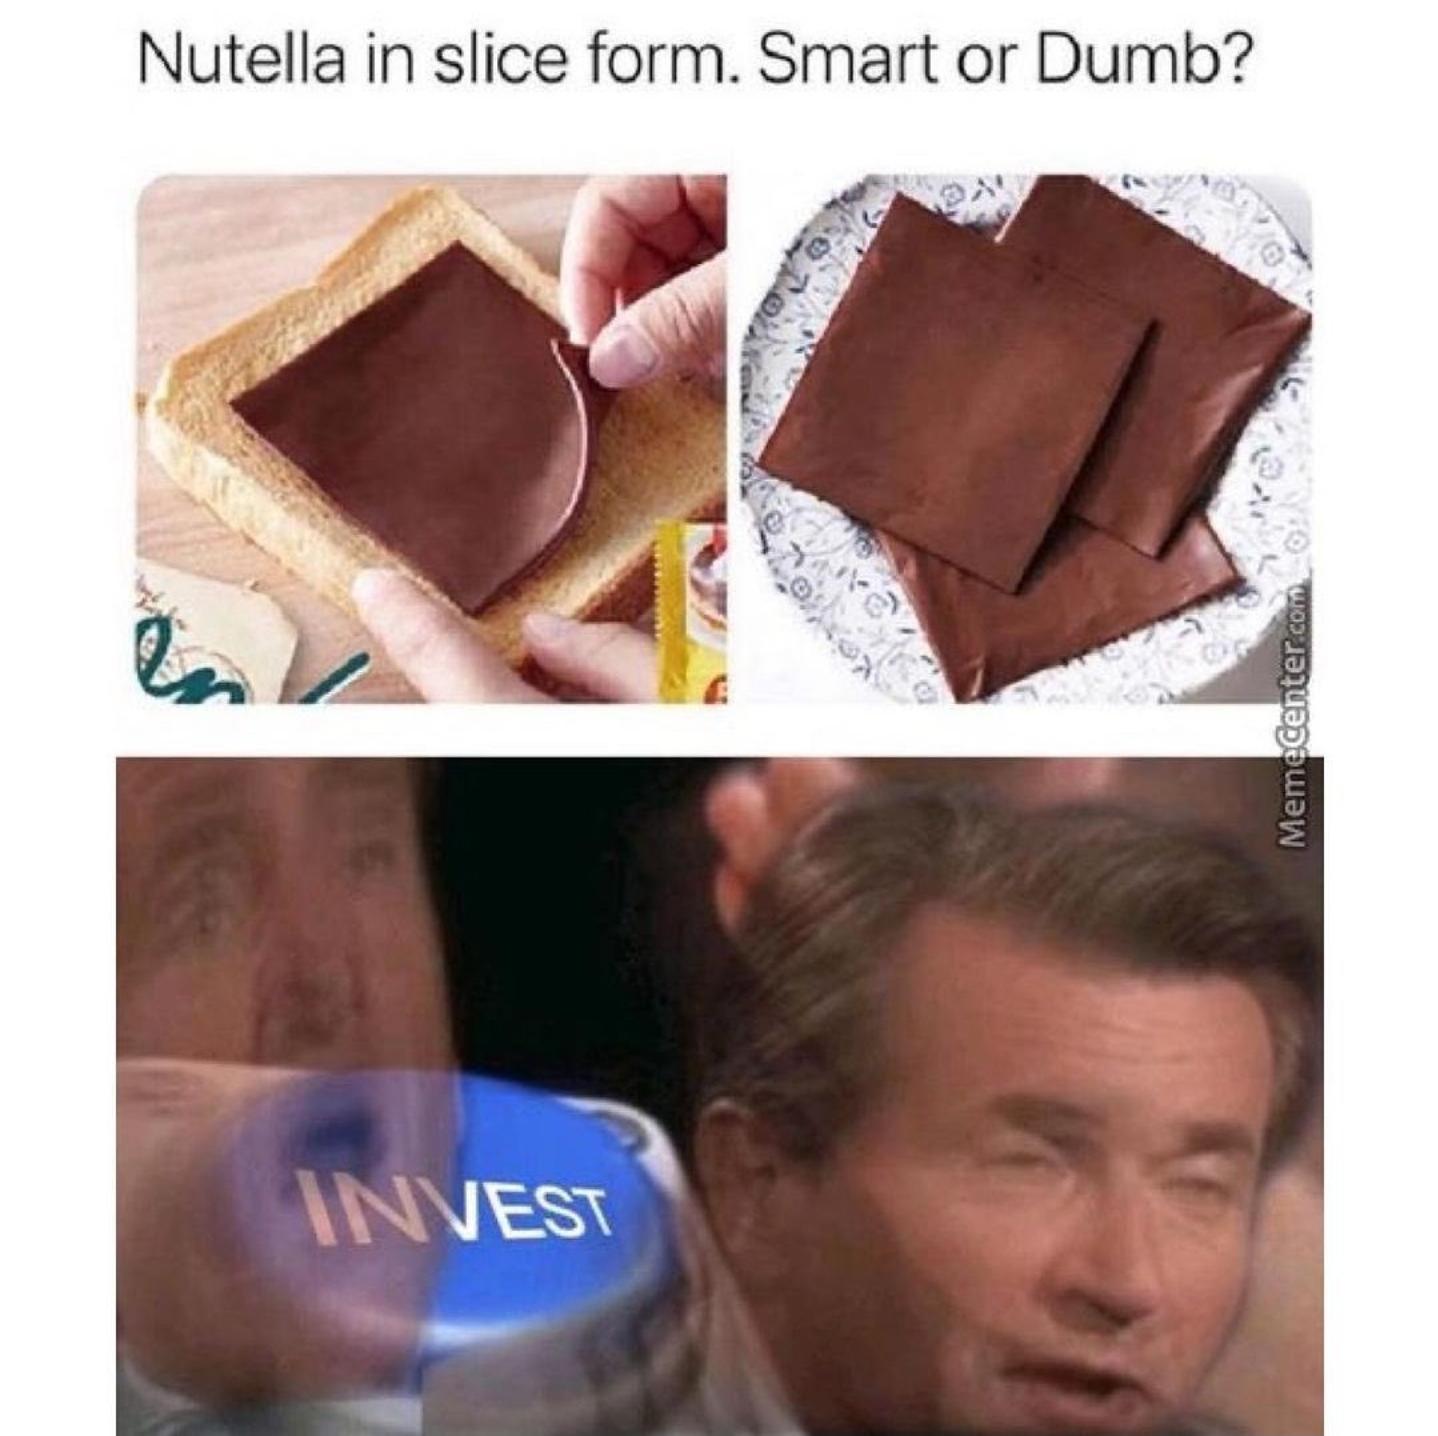 nutella slices - Nutella in slice form. Smart or Dumb? en Memecenter.com Invest